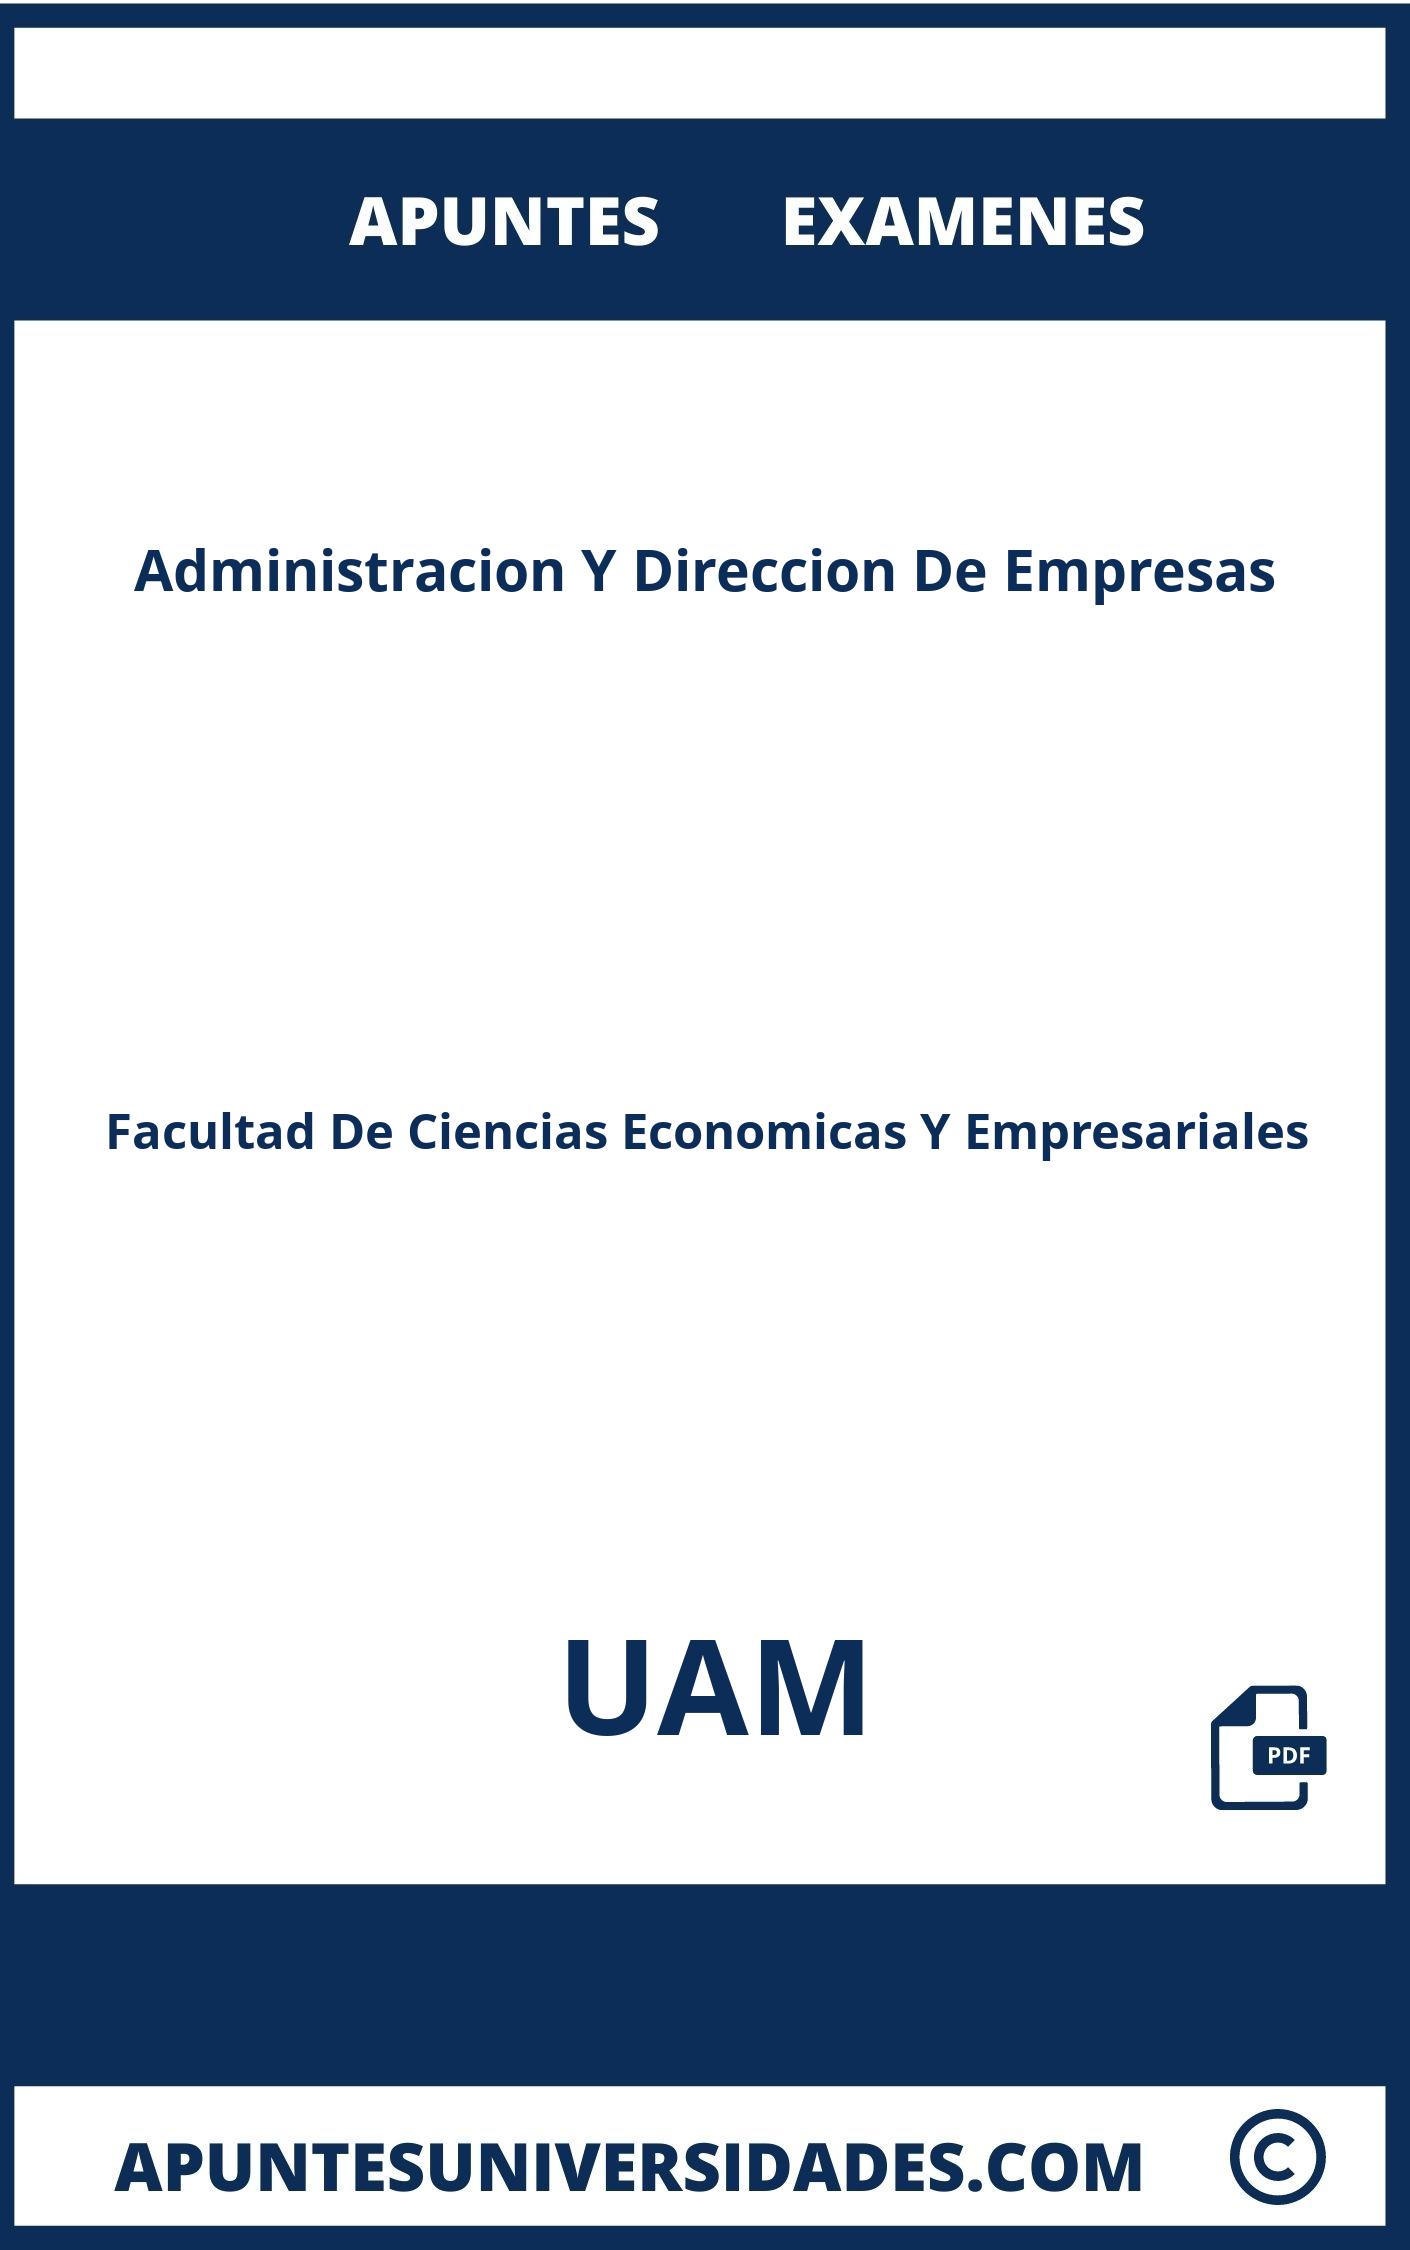 Examenes Apuntes Administracion Y Direccion De Empresas UAM